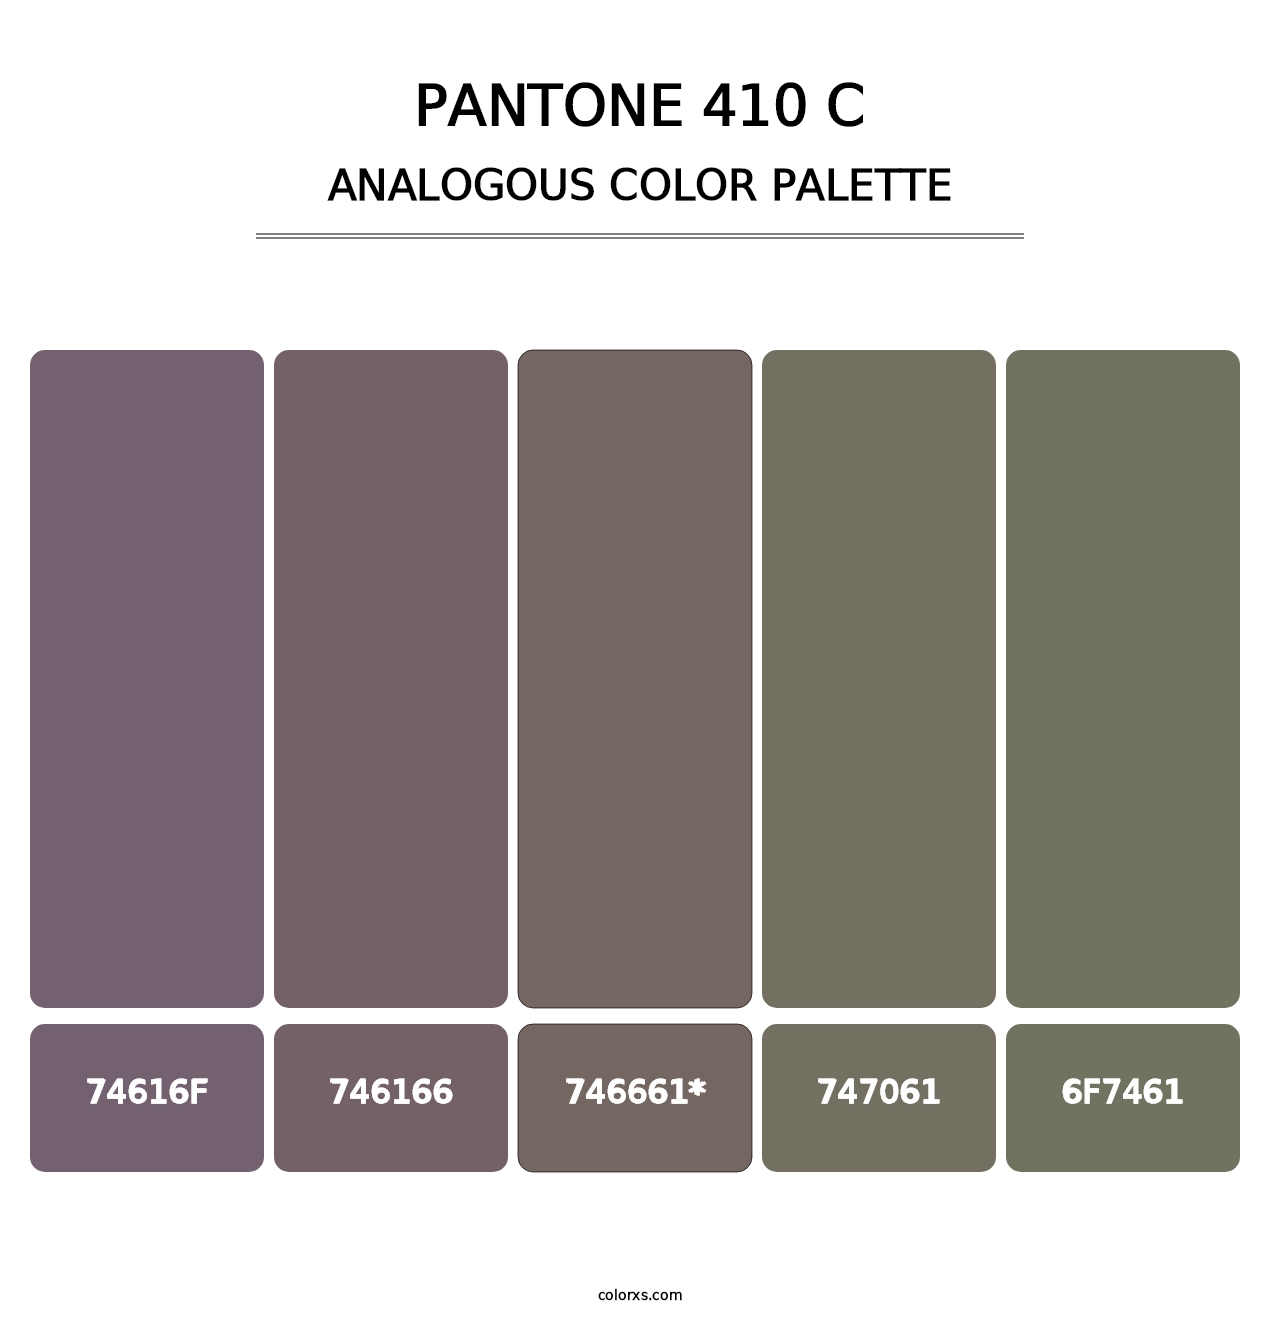 PANTONE 410 C - Analogous Color Palette